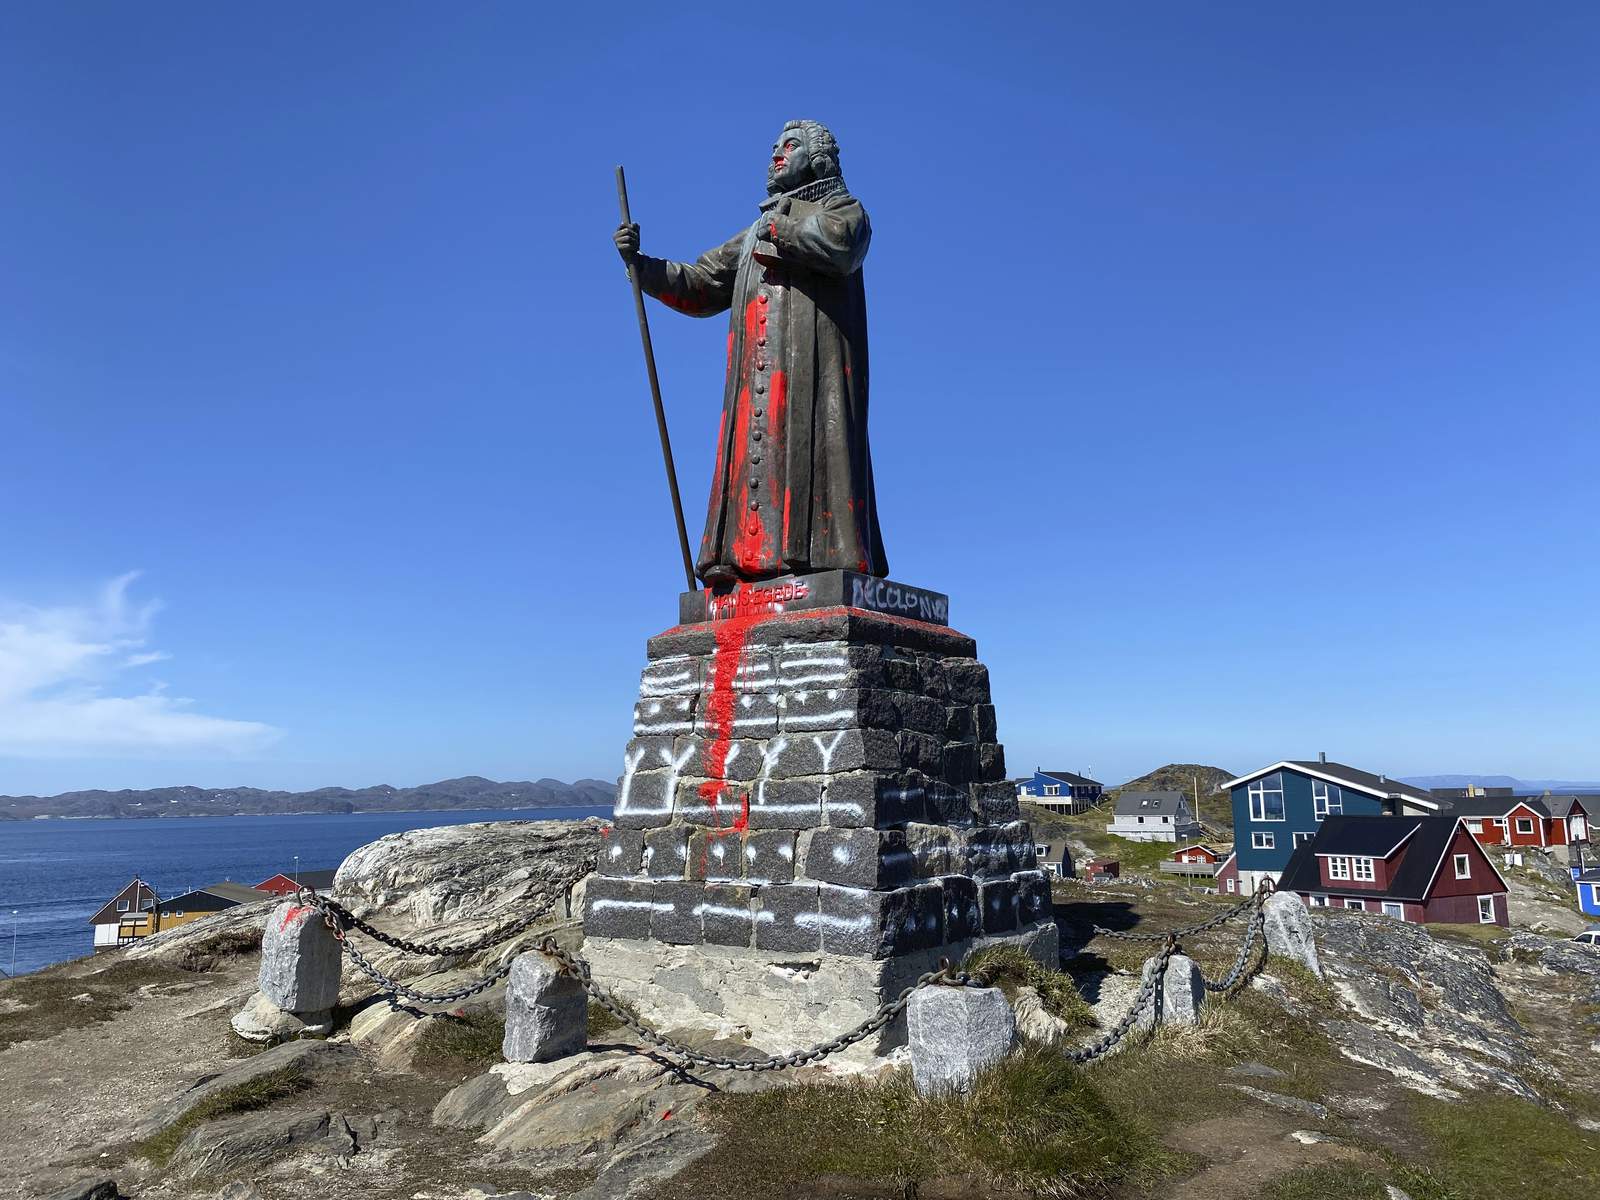 Greenland: Police arrest suspects in statue vandalism case